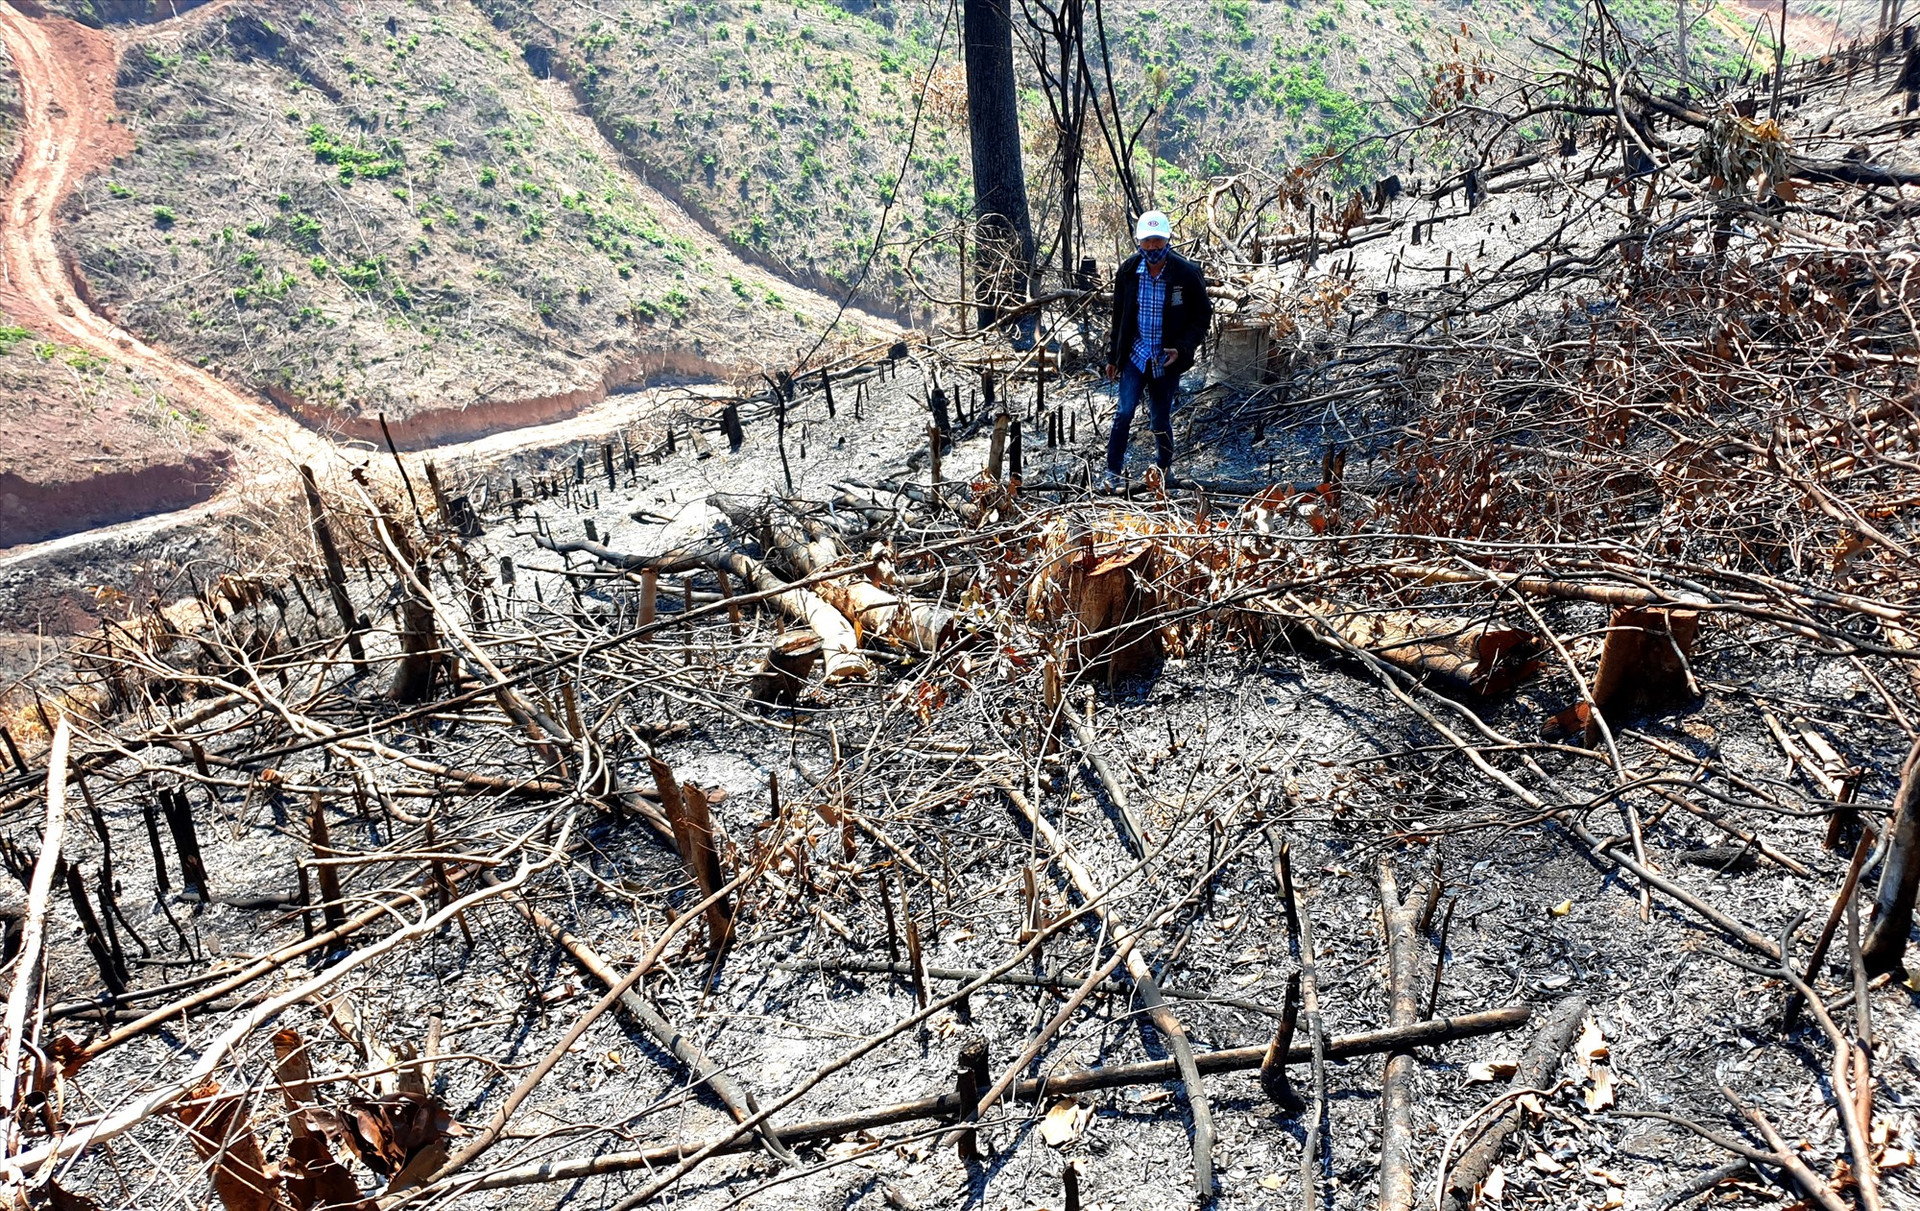 Nhiều khu vực rừng bị cháy rụi, ước tính diện tích bị ảnh hưởng khoảng 10ha. Ảnh: Đ.N